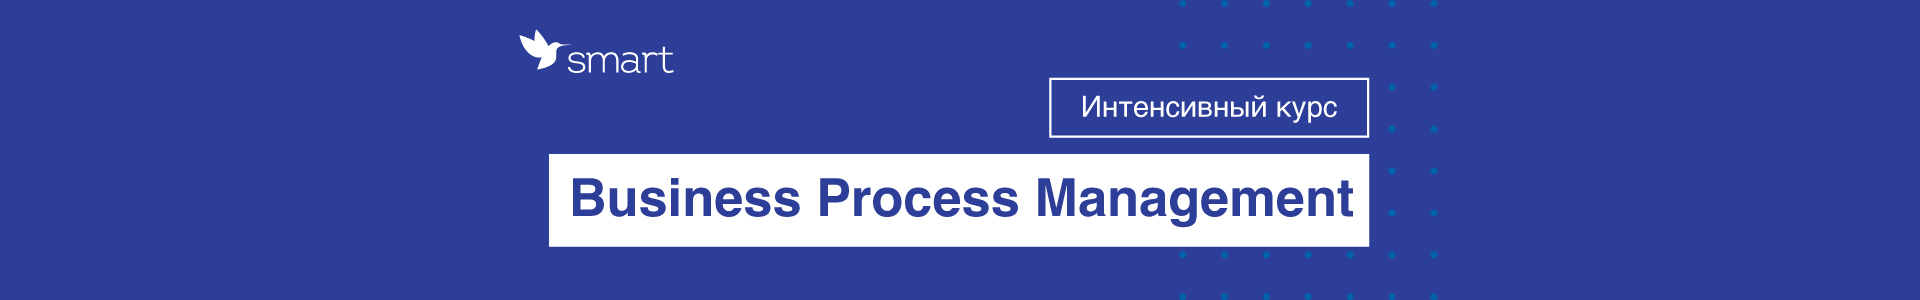 Business-Process-Management_02_web